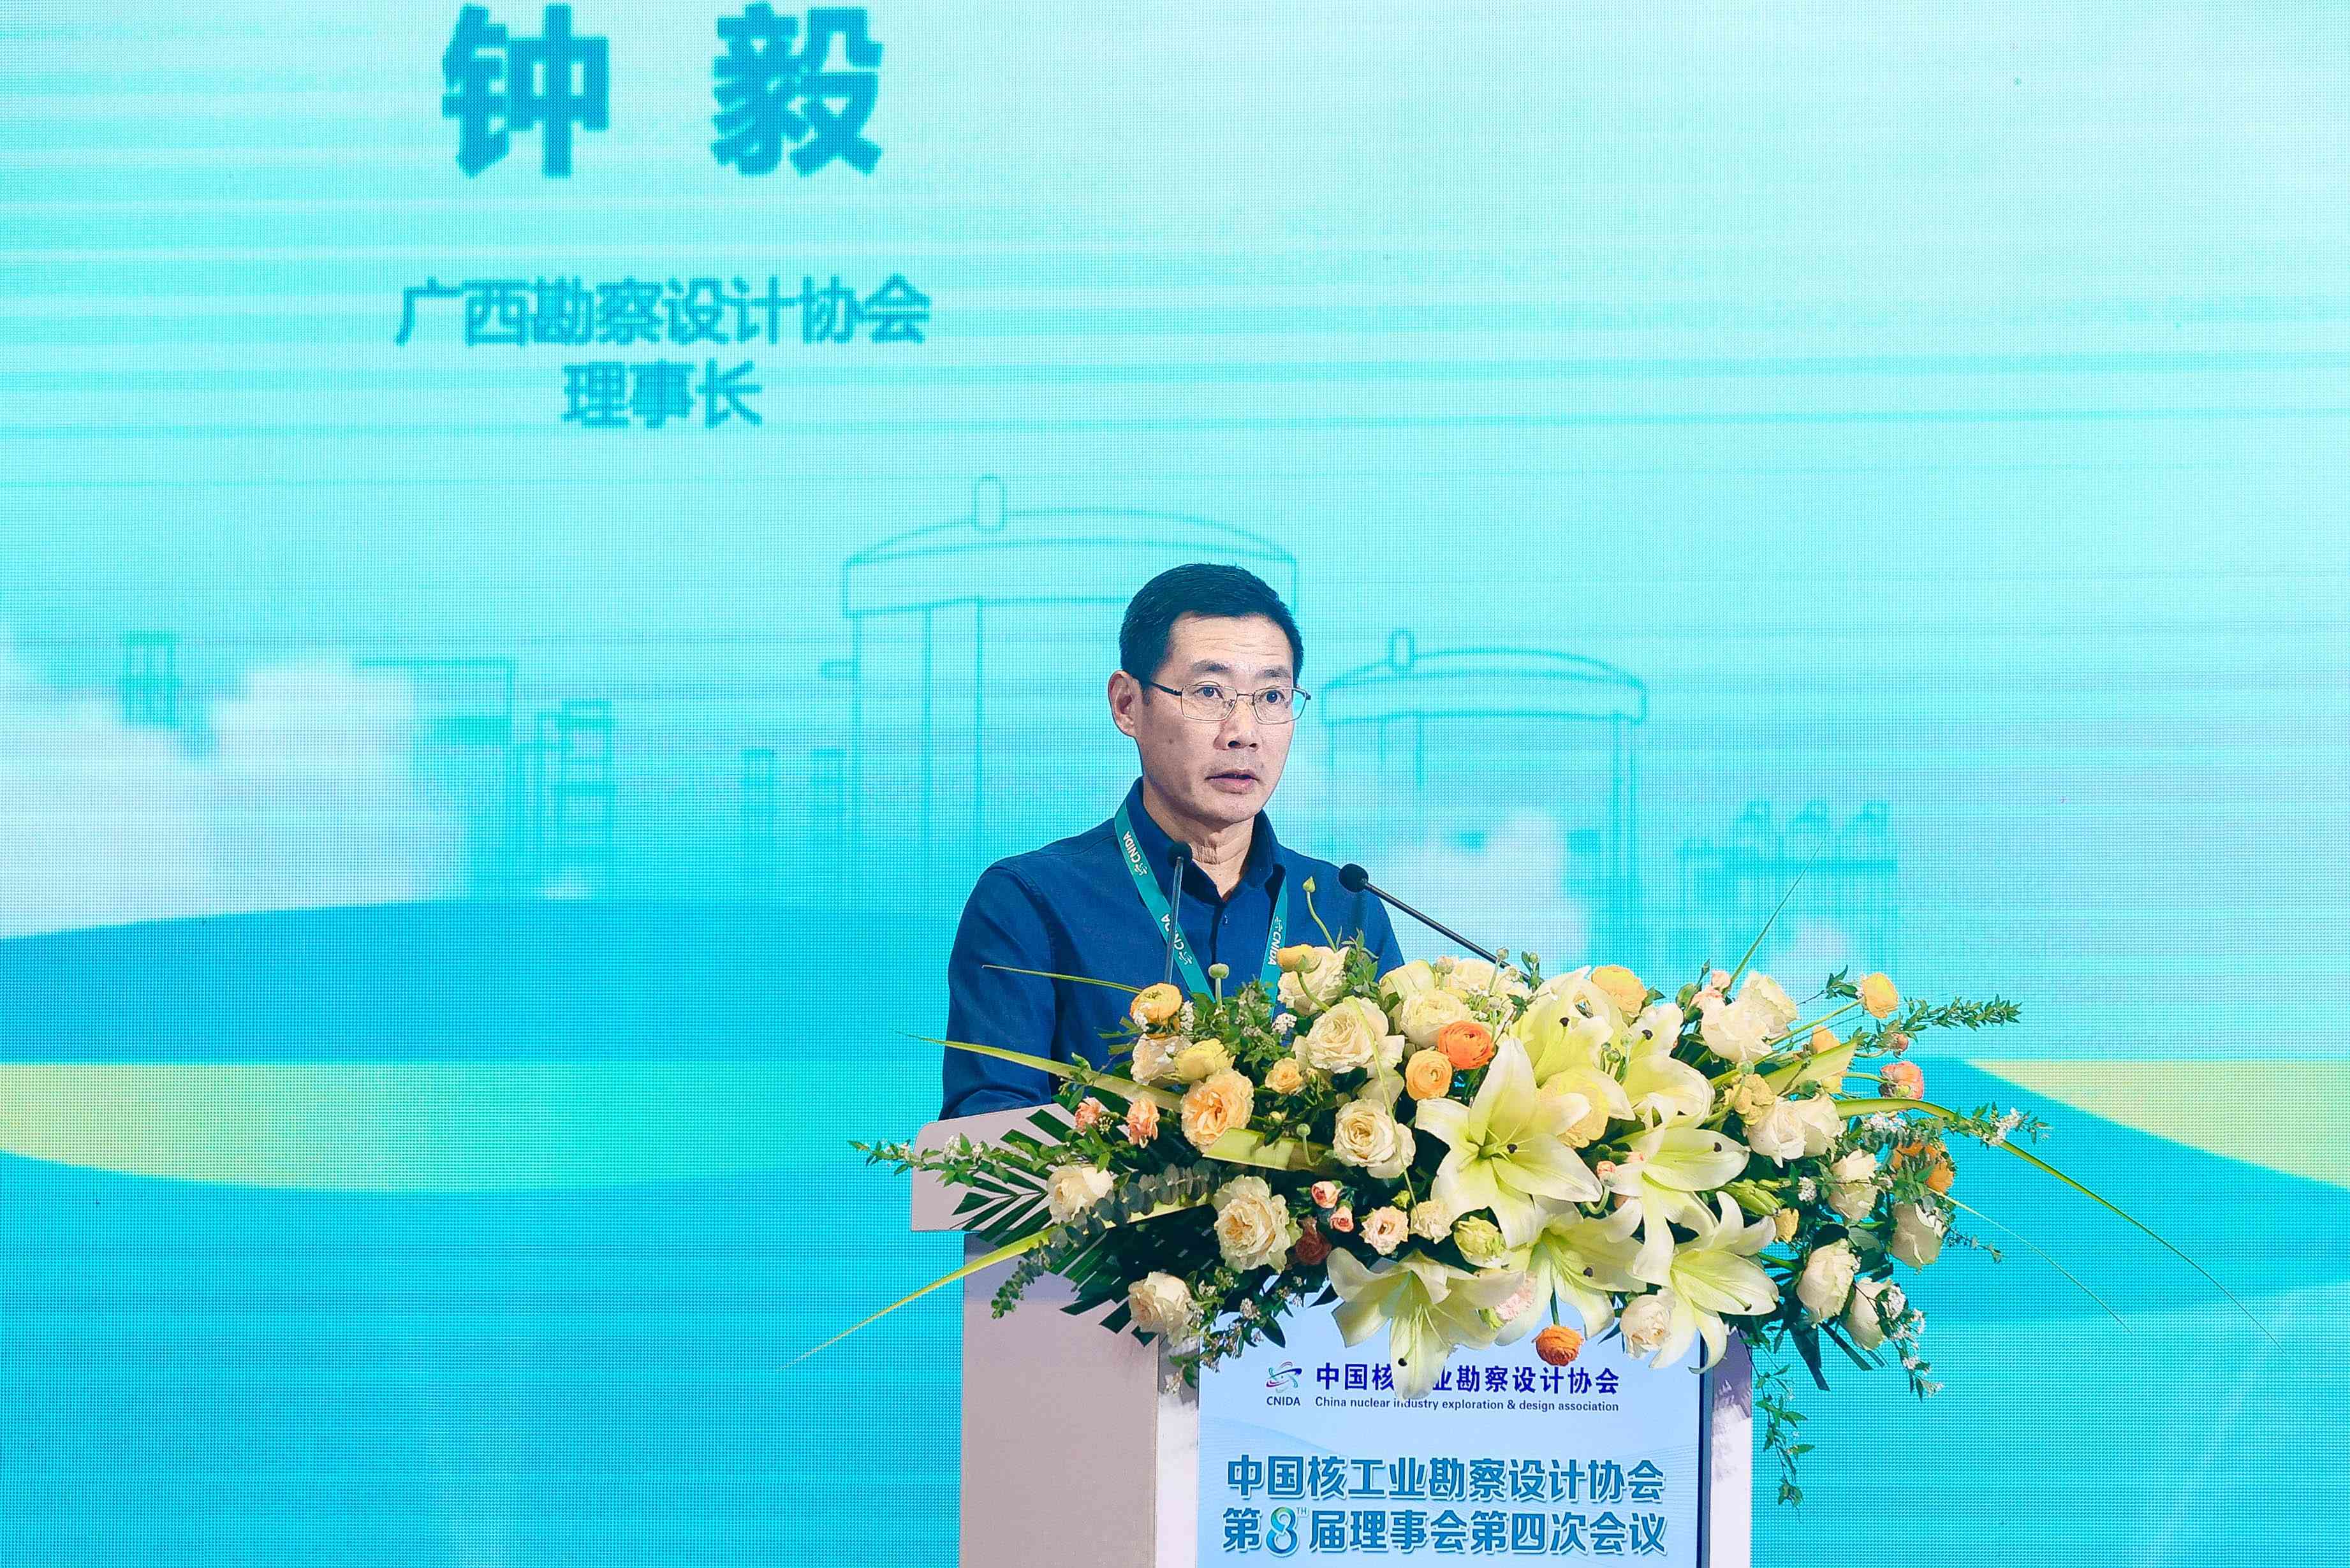 广西勘察设计协会领导应邀参加中国核工业勘察设计协会第八届理事会第四次会议